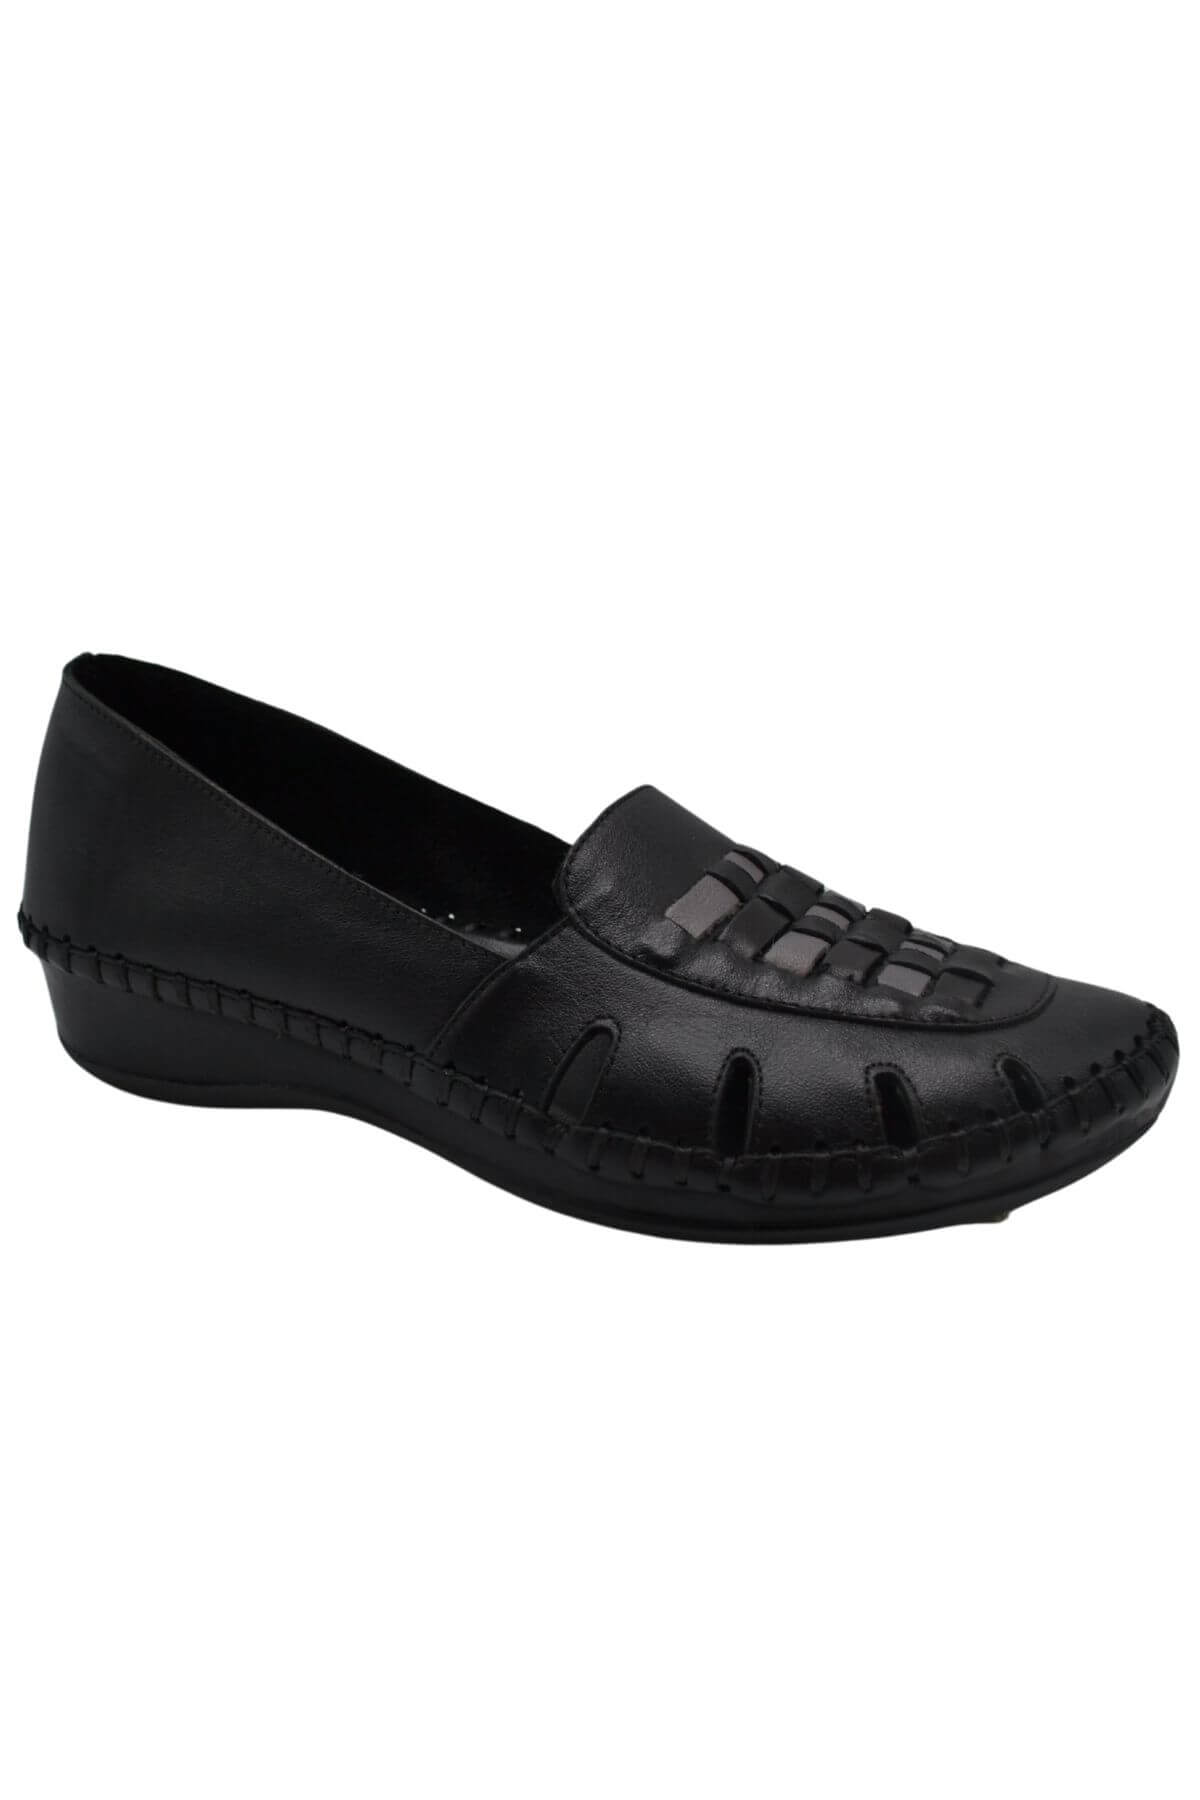 Kadın Comfort Deri Sandalet Siyah 23033320Y